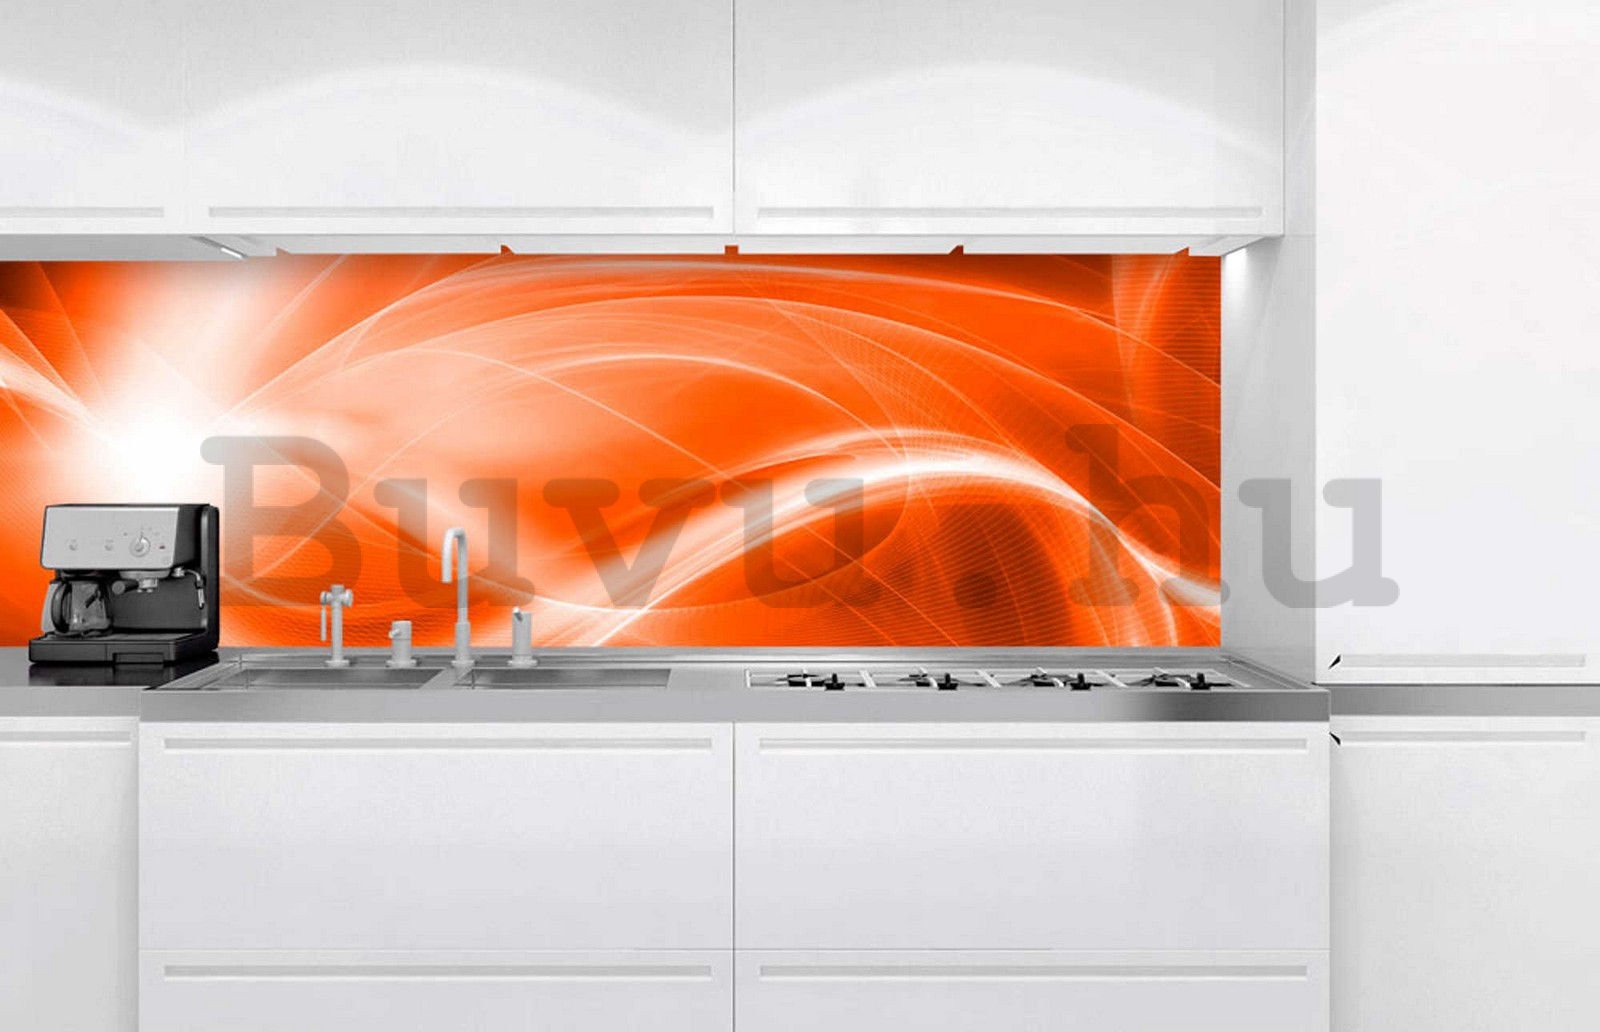 Öntapadós mosható fotótapéta konyhába - Narancssárga absztrakció, 180x60 cm